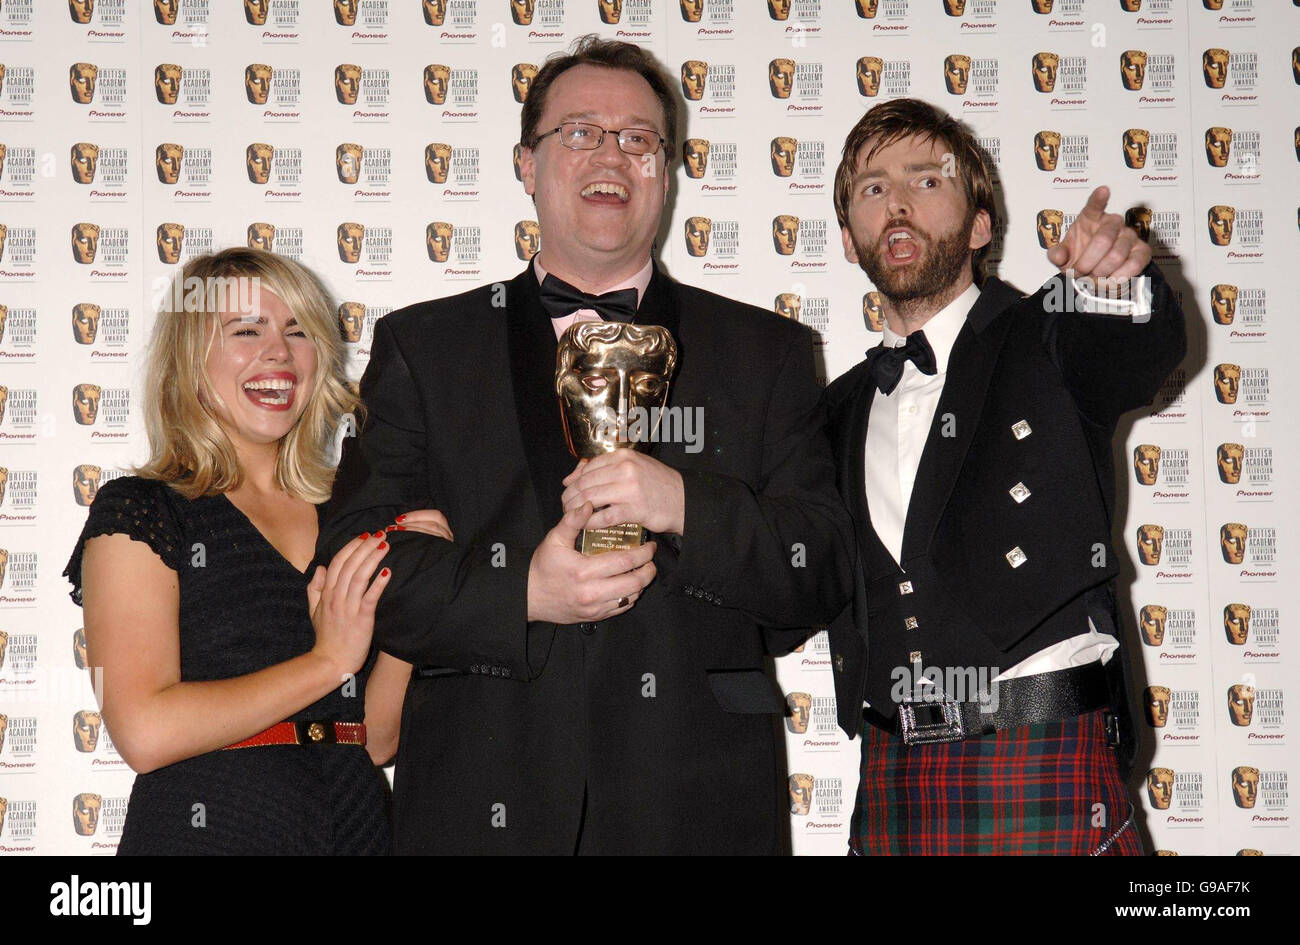 Stars de Dr Who (qui a remporté le prix de la meilleure série de drama), Billie Piper (à gauche) et David Tennant (à droite) avec l'écrivain Russell T.Davis, pendant la TV Baftas, à l'hôtel Grosvenor House dans le centre de Londres. Banque D'Images